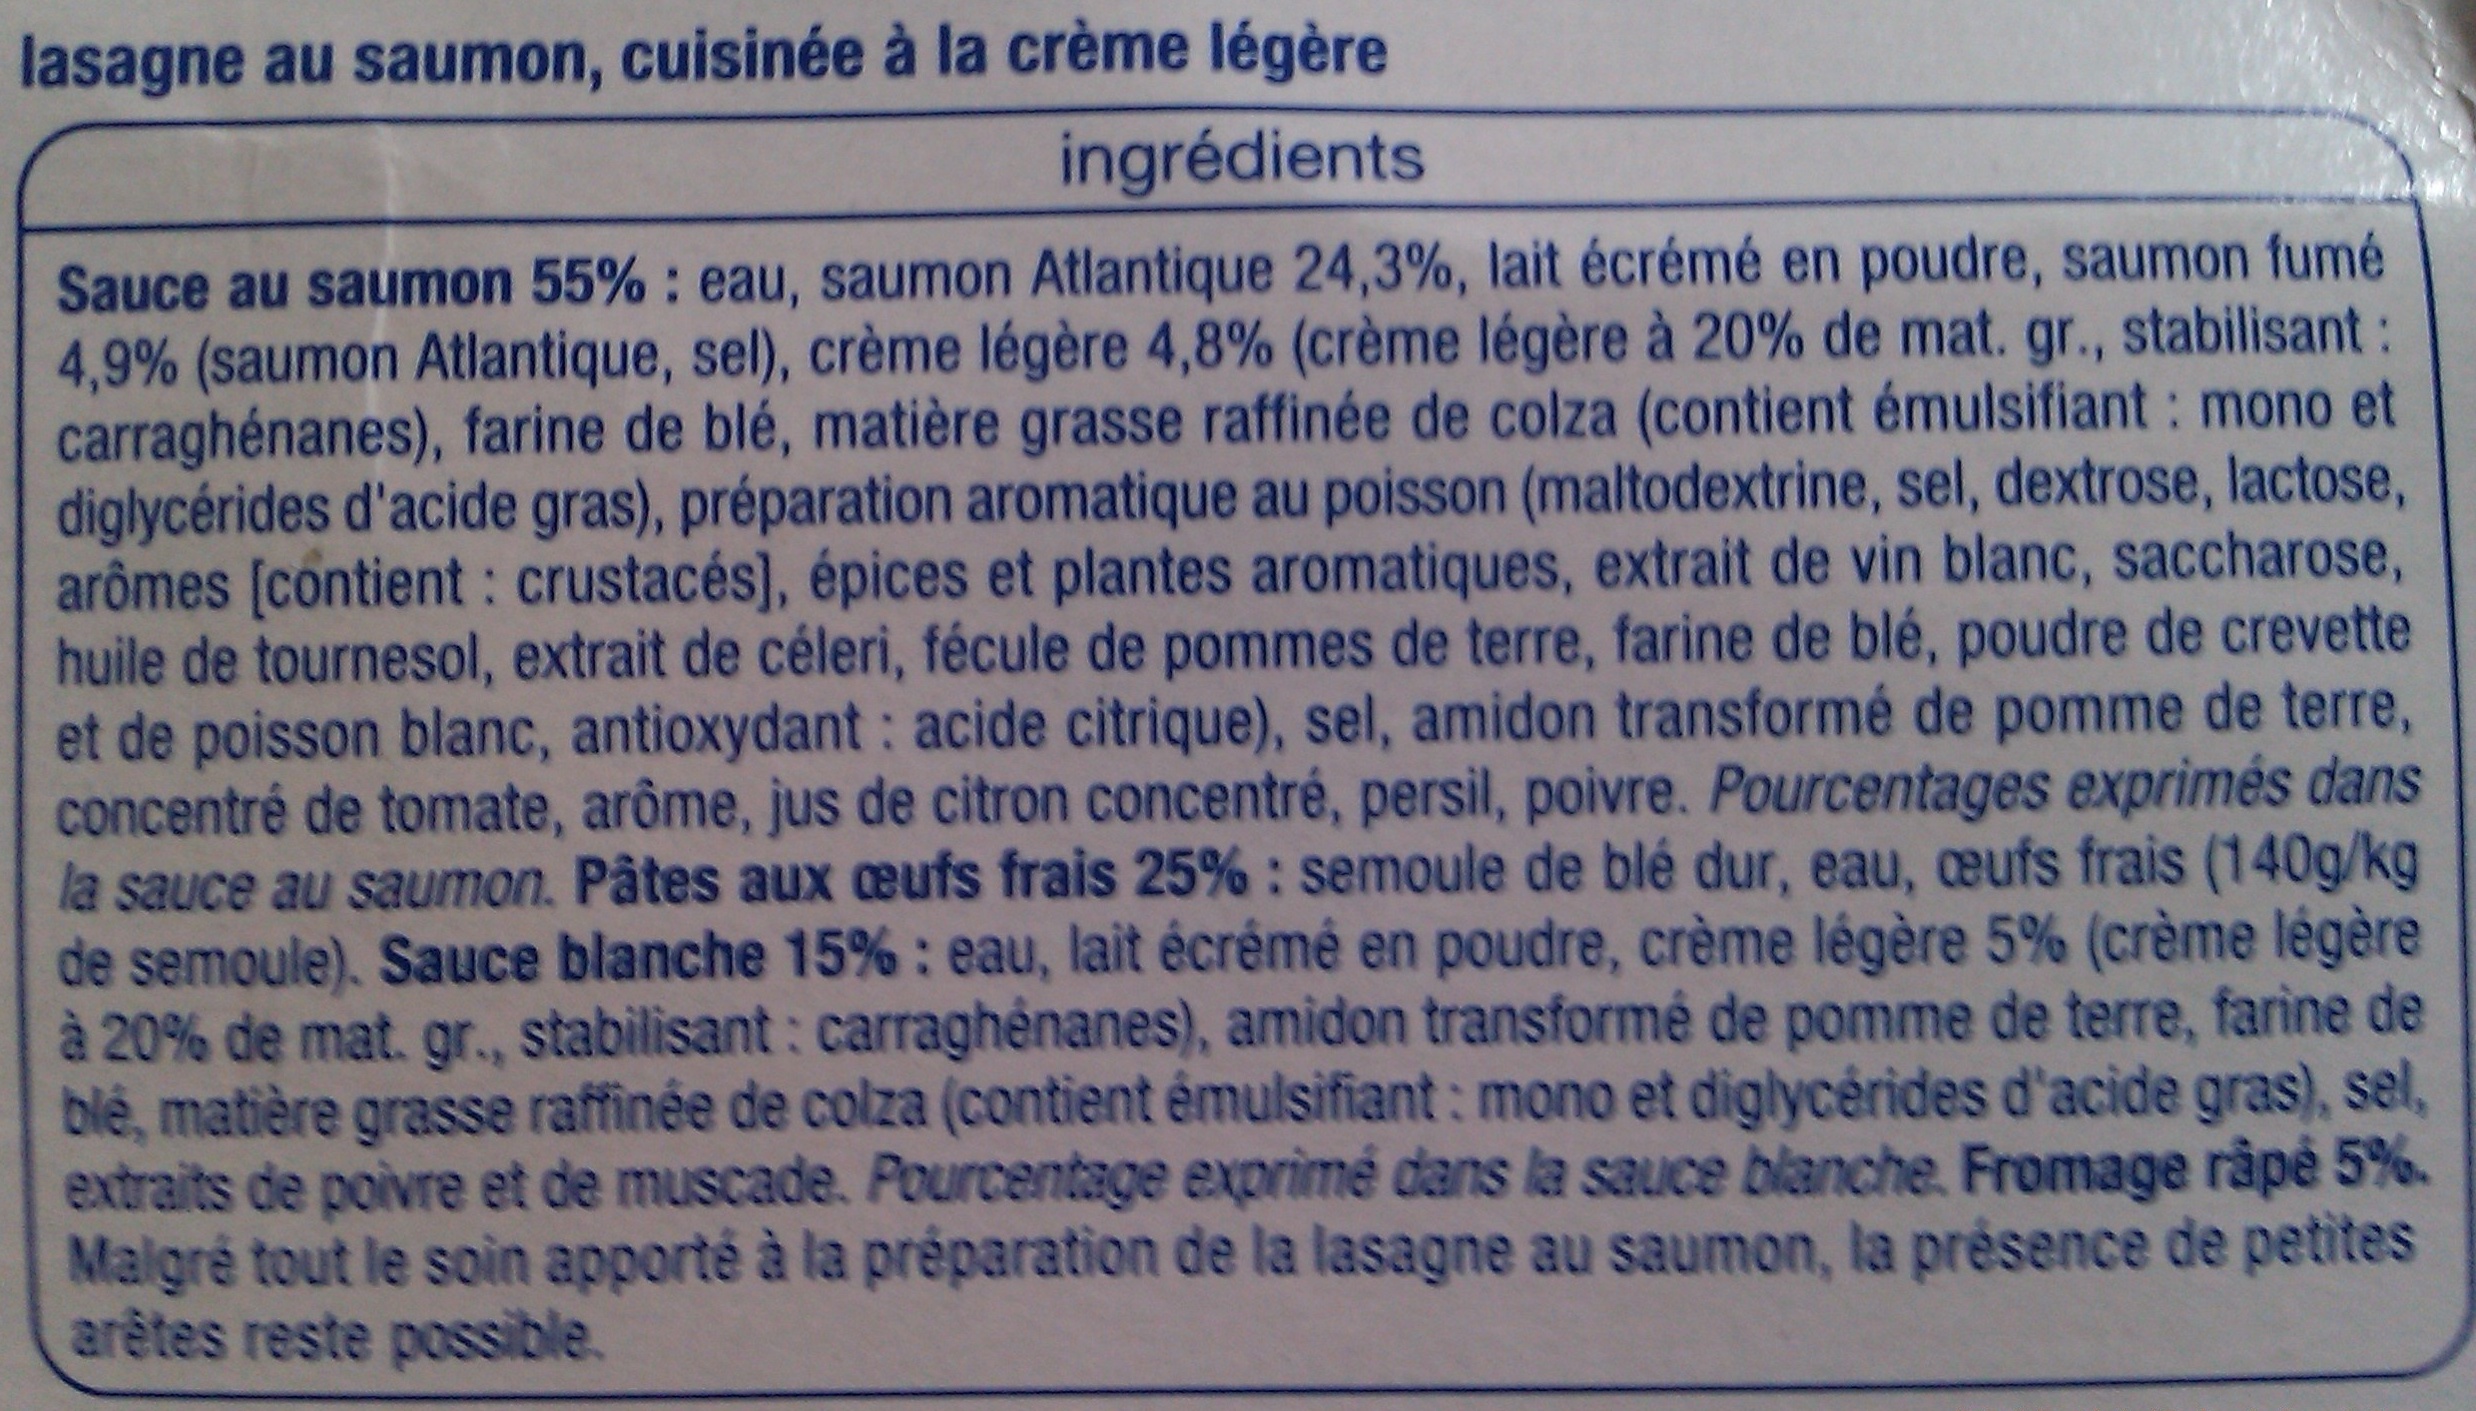 Lasagne Saumon - Ingrédients